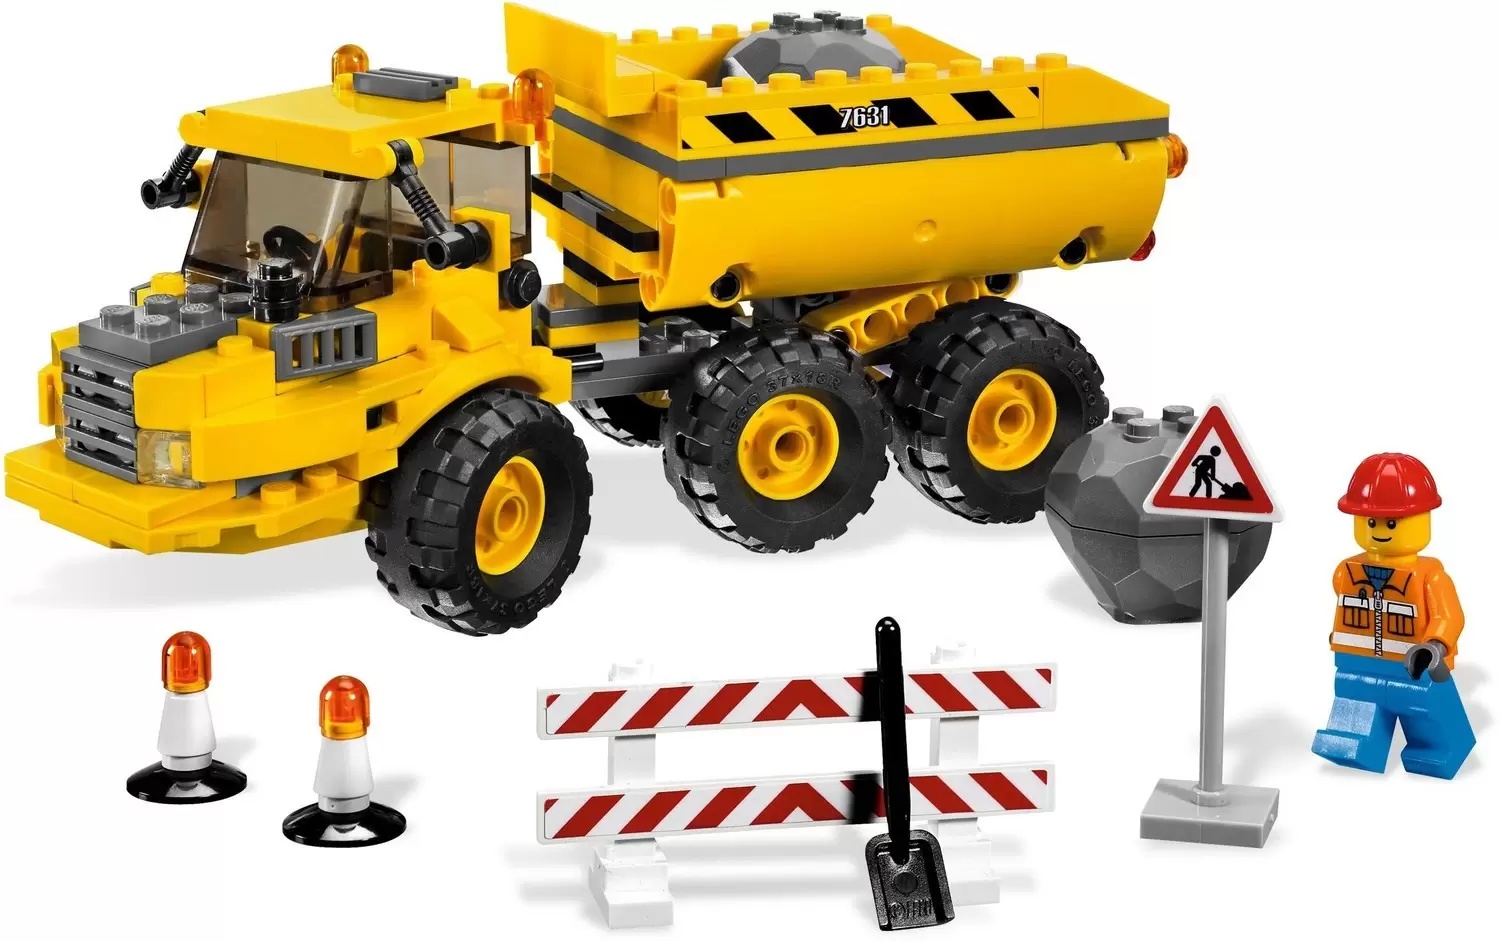 badning varsel Udfyld Dump Truck - LEGO CITY set 7631